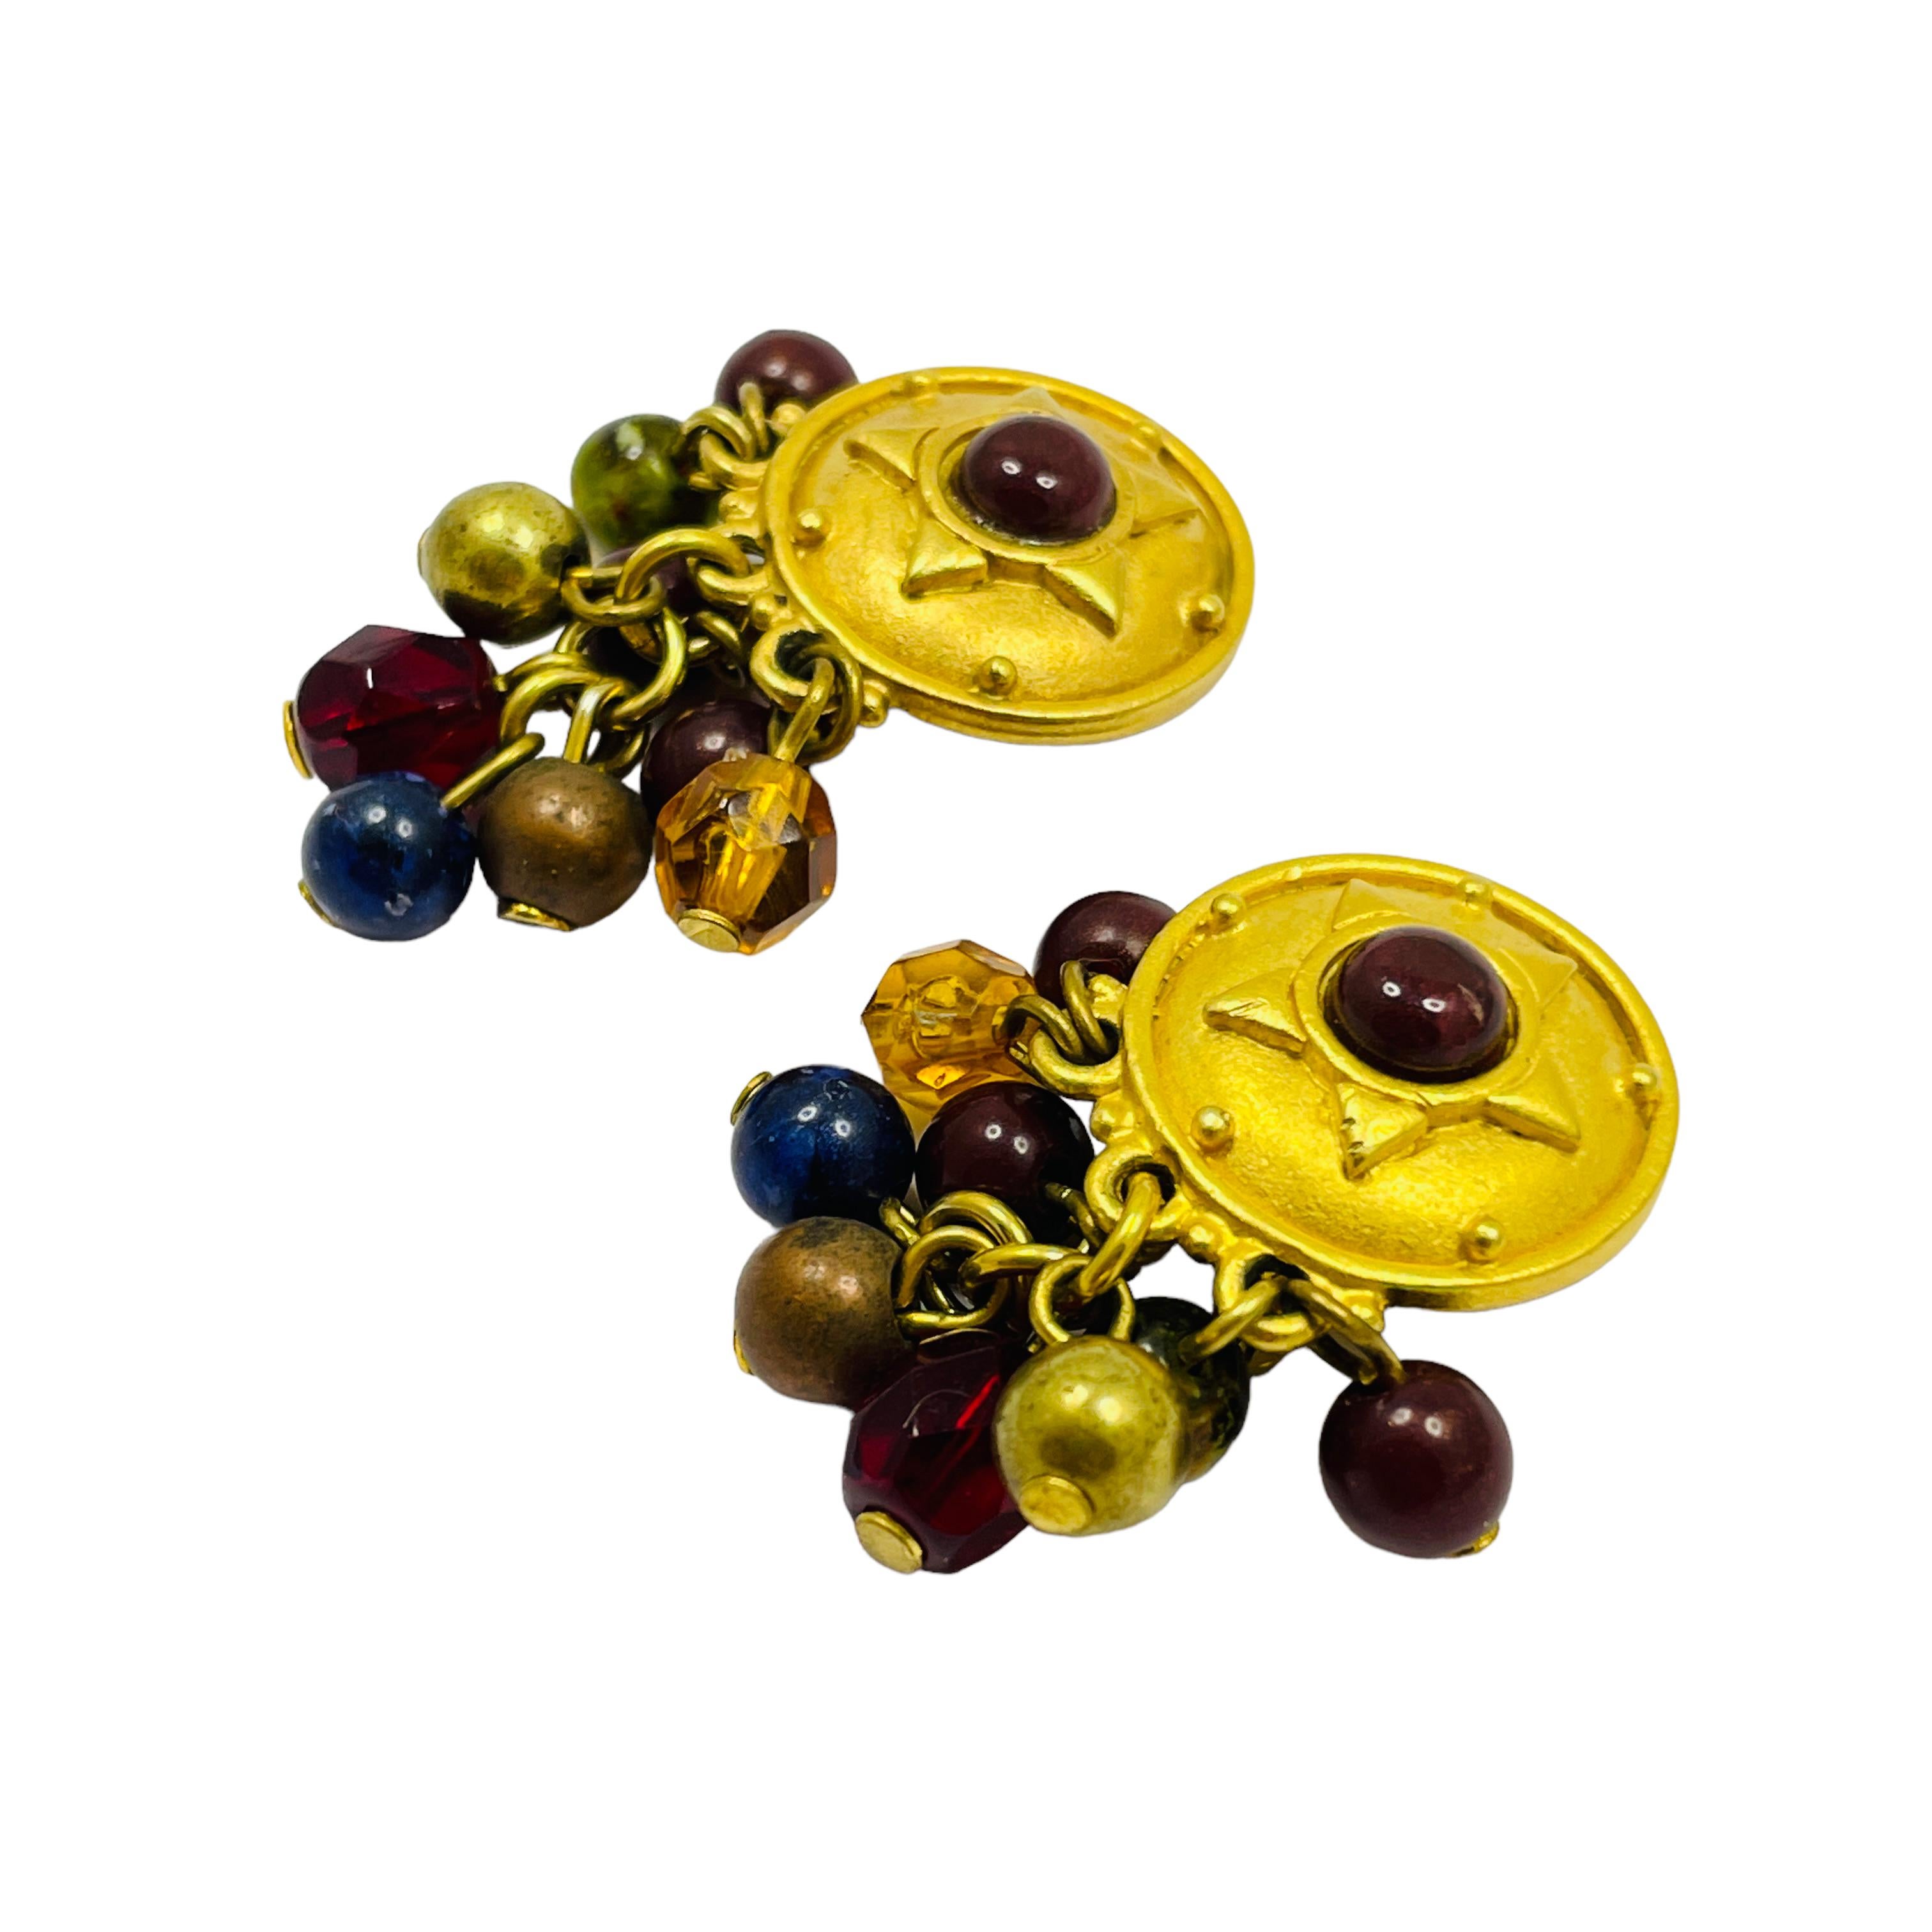 DETAILS

- • unterzeichnet LIZ CLAIBORNE

- • goldfarben mit Perlen

- • vintage designer ohrringe durchbohrt

MASSNAHMEN

- • 0,5